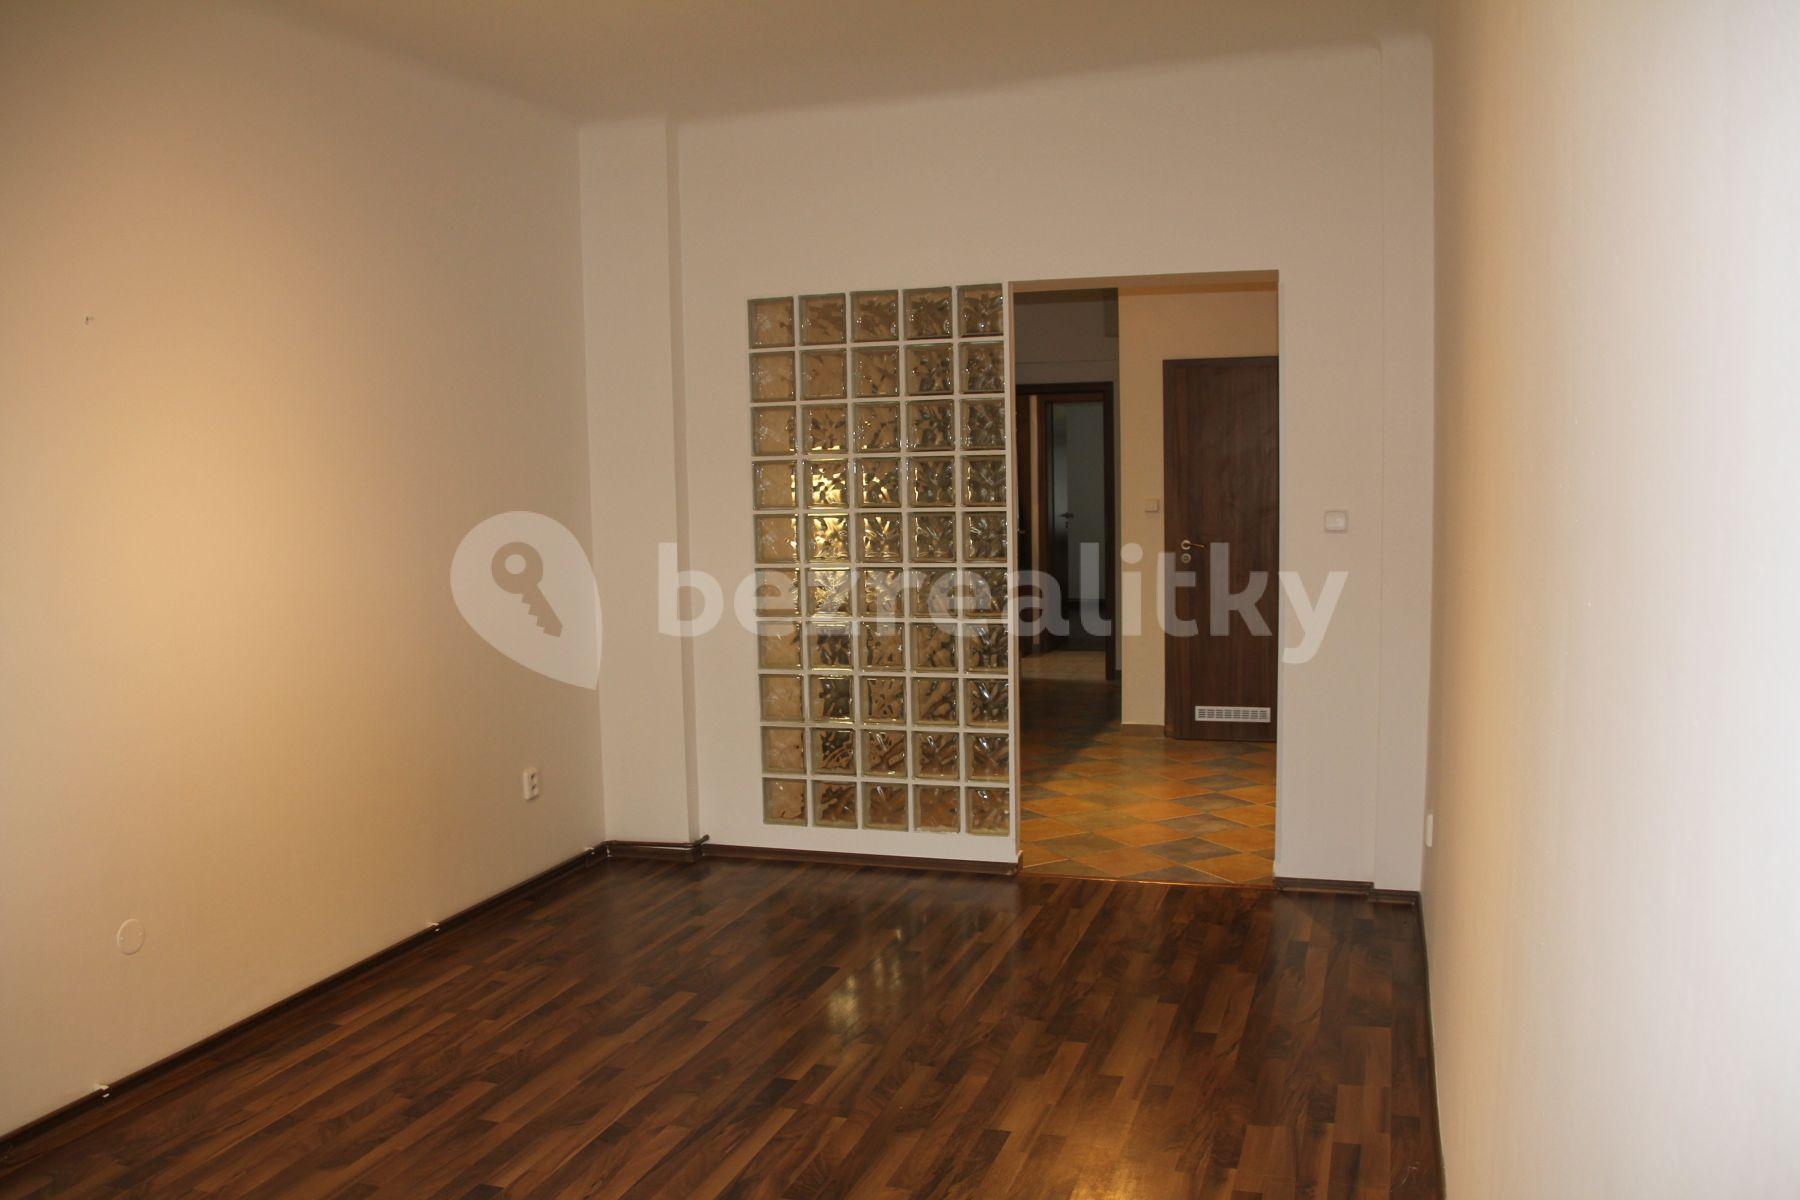 2 bedroom flat for sale, 54 m², Prokopovo náměstí, Prague, Prague